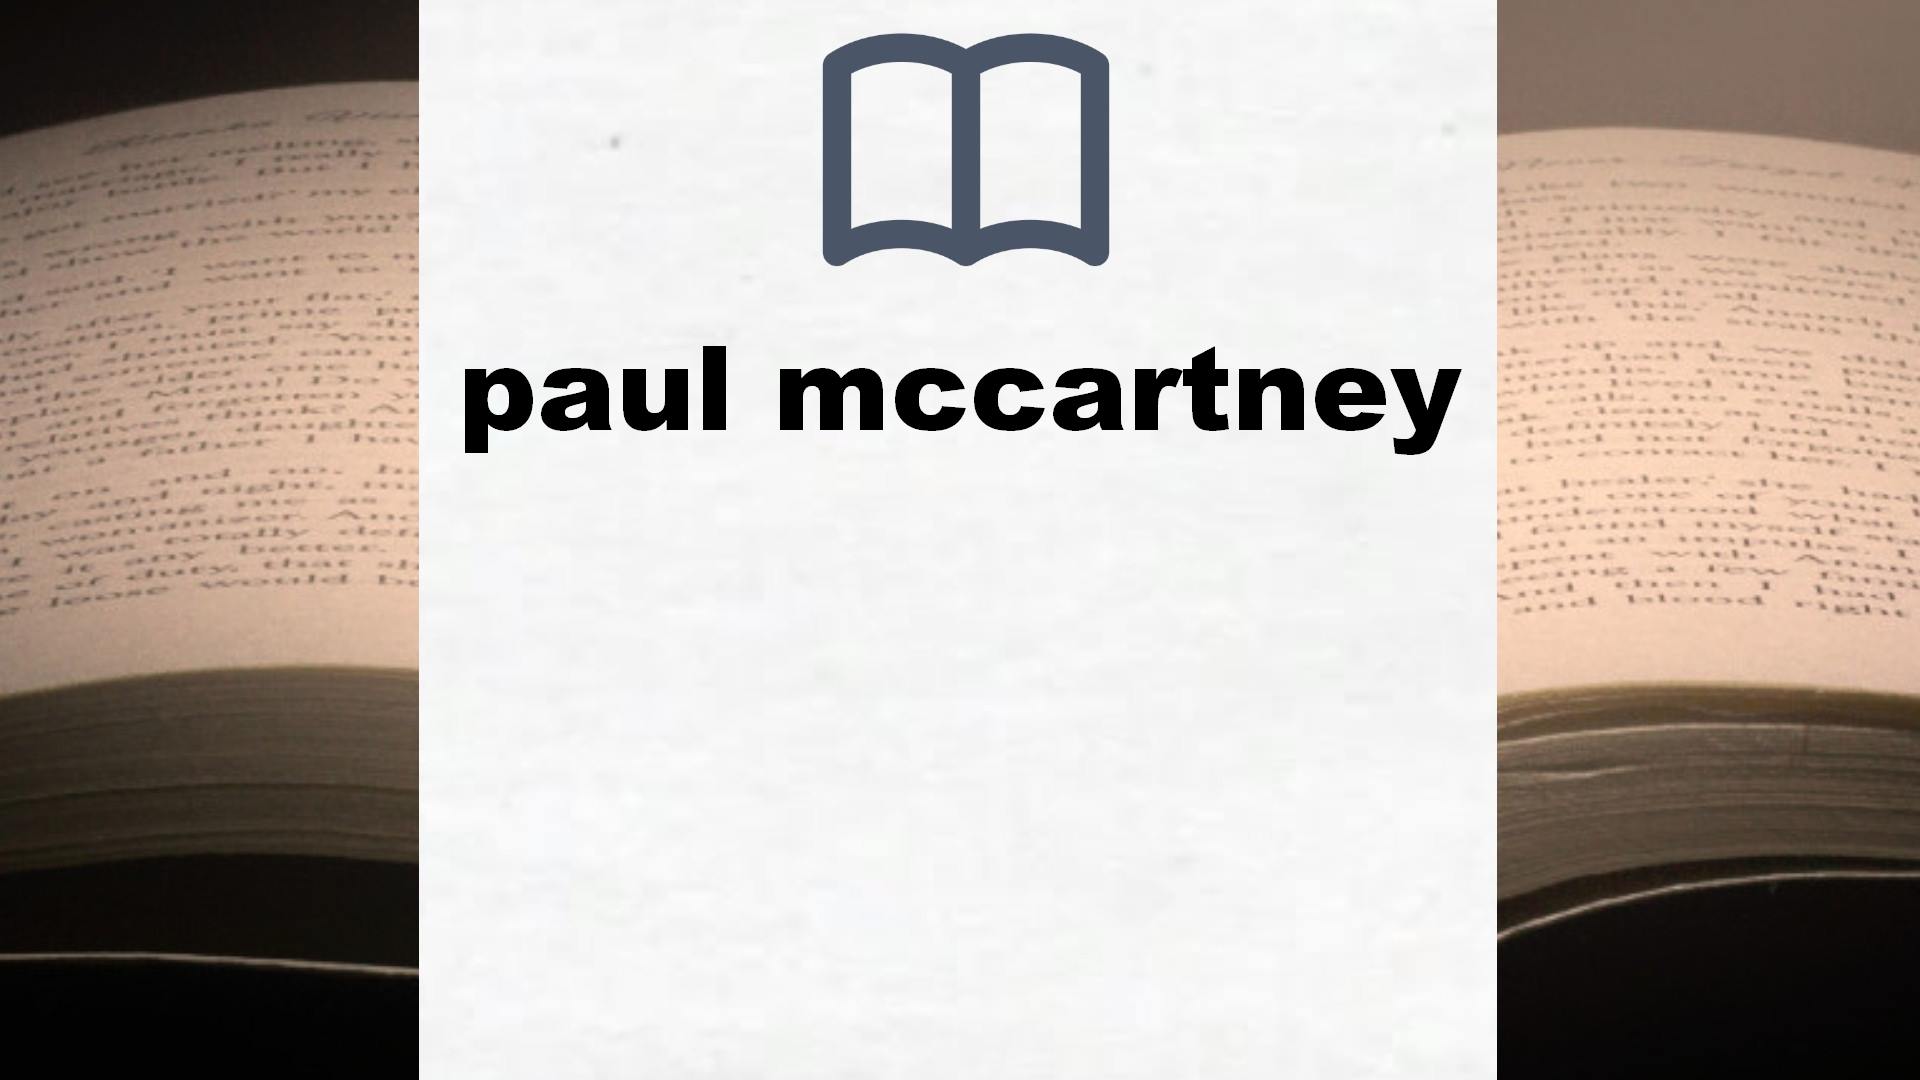 Libros sobre paul mccartney